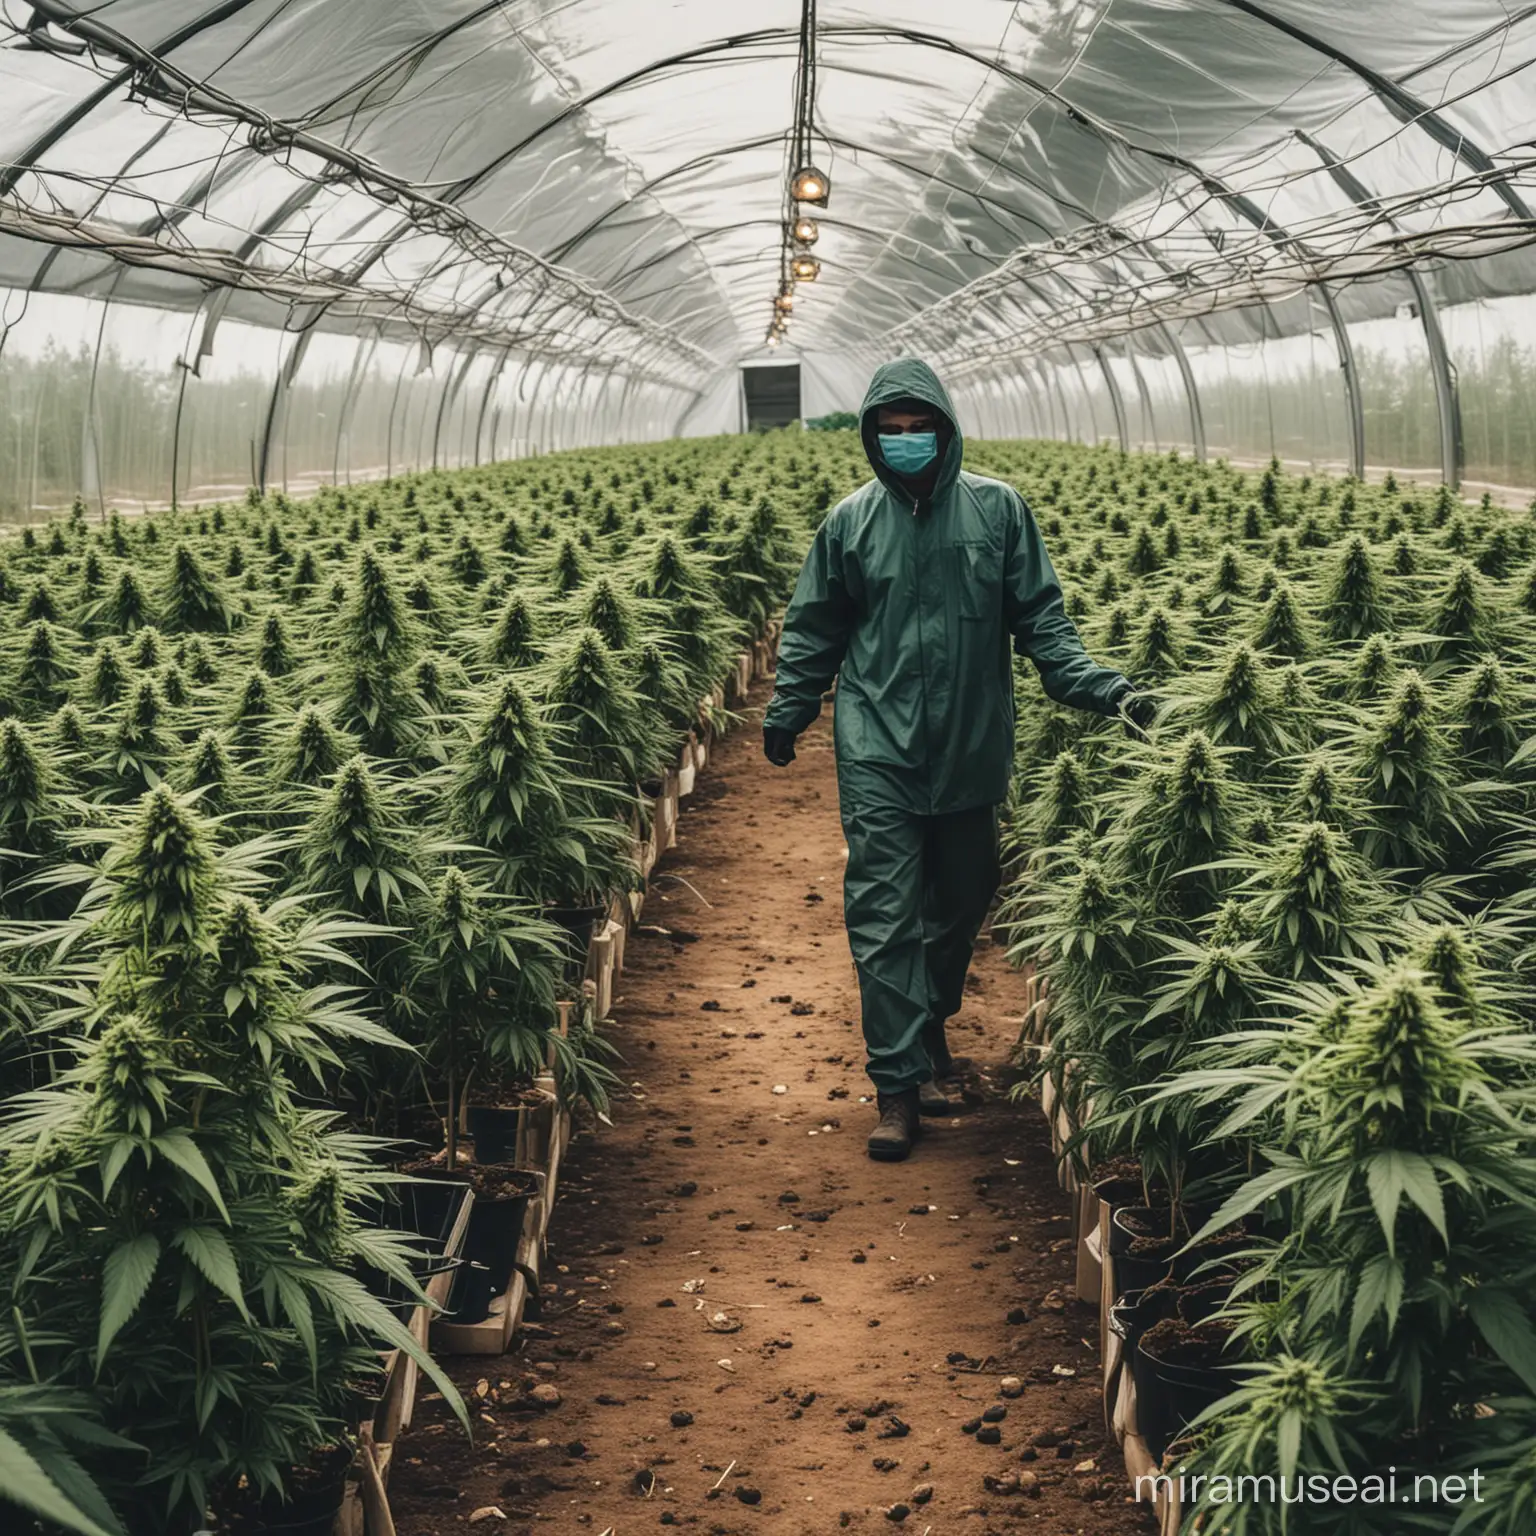 ein bild welches für nachhaltigkeit und biologischen cannabisanbau steht